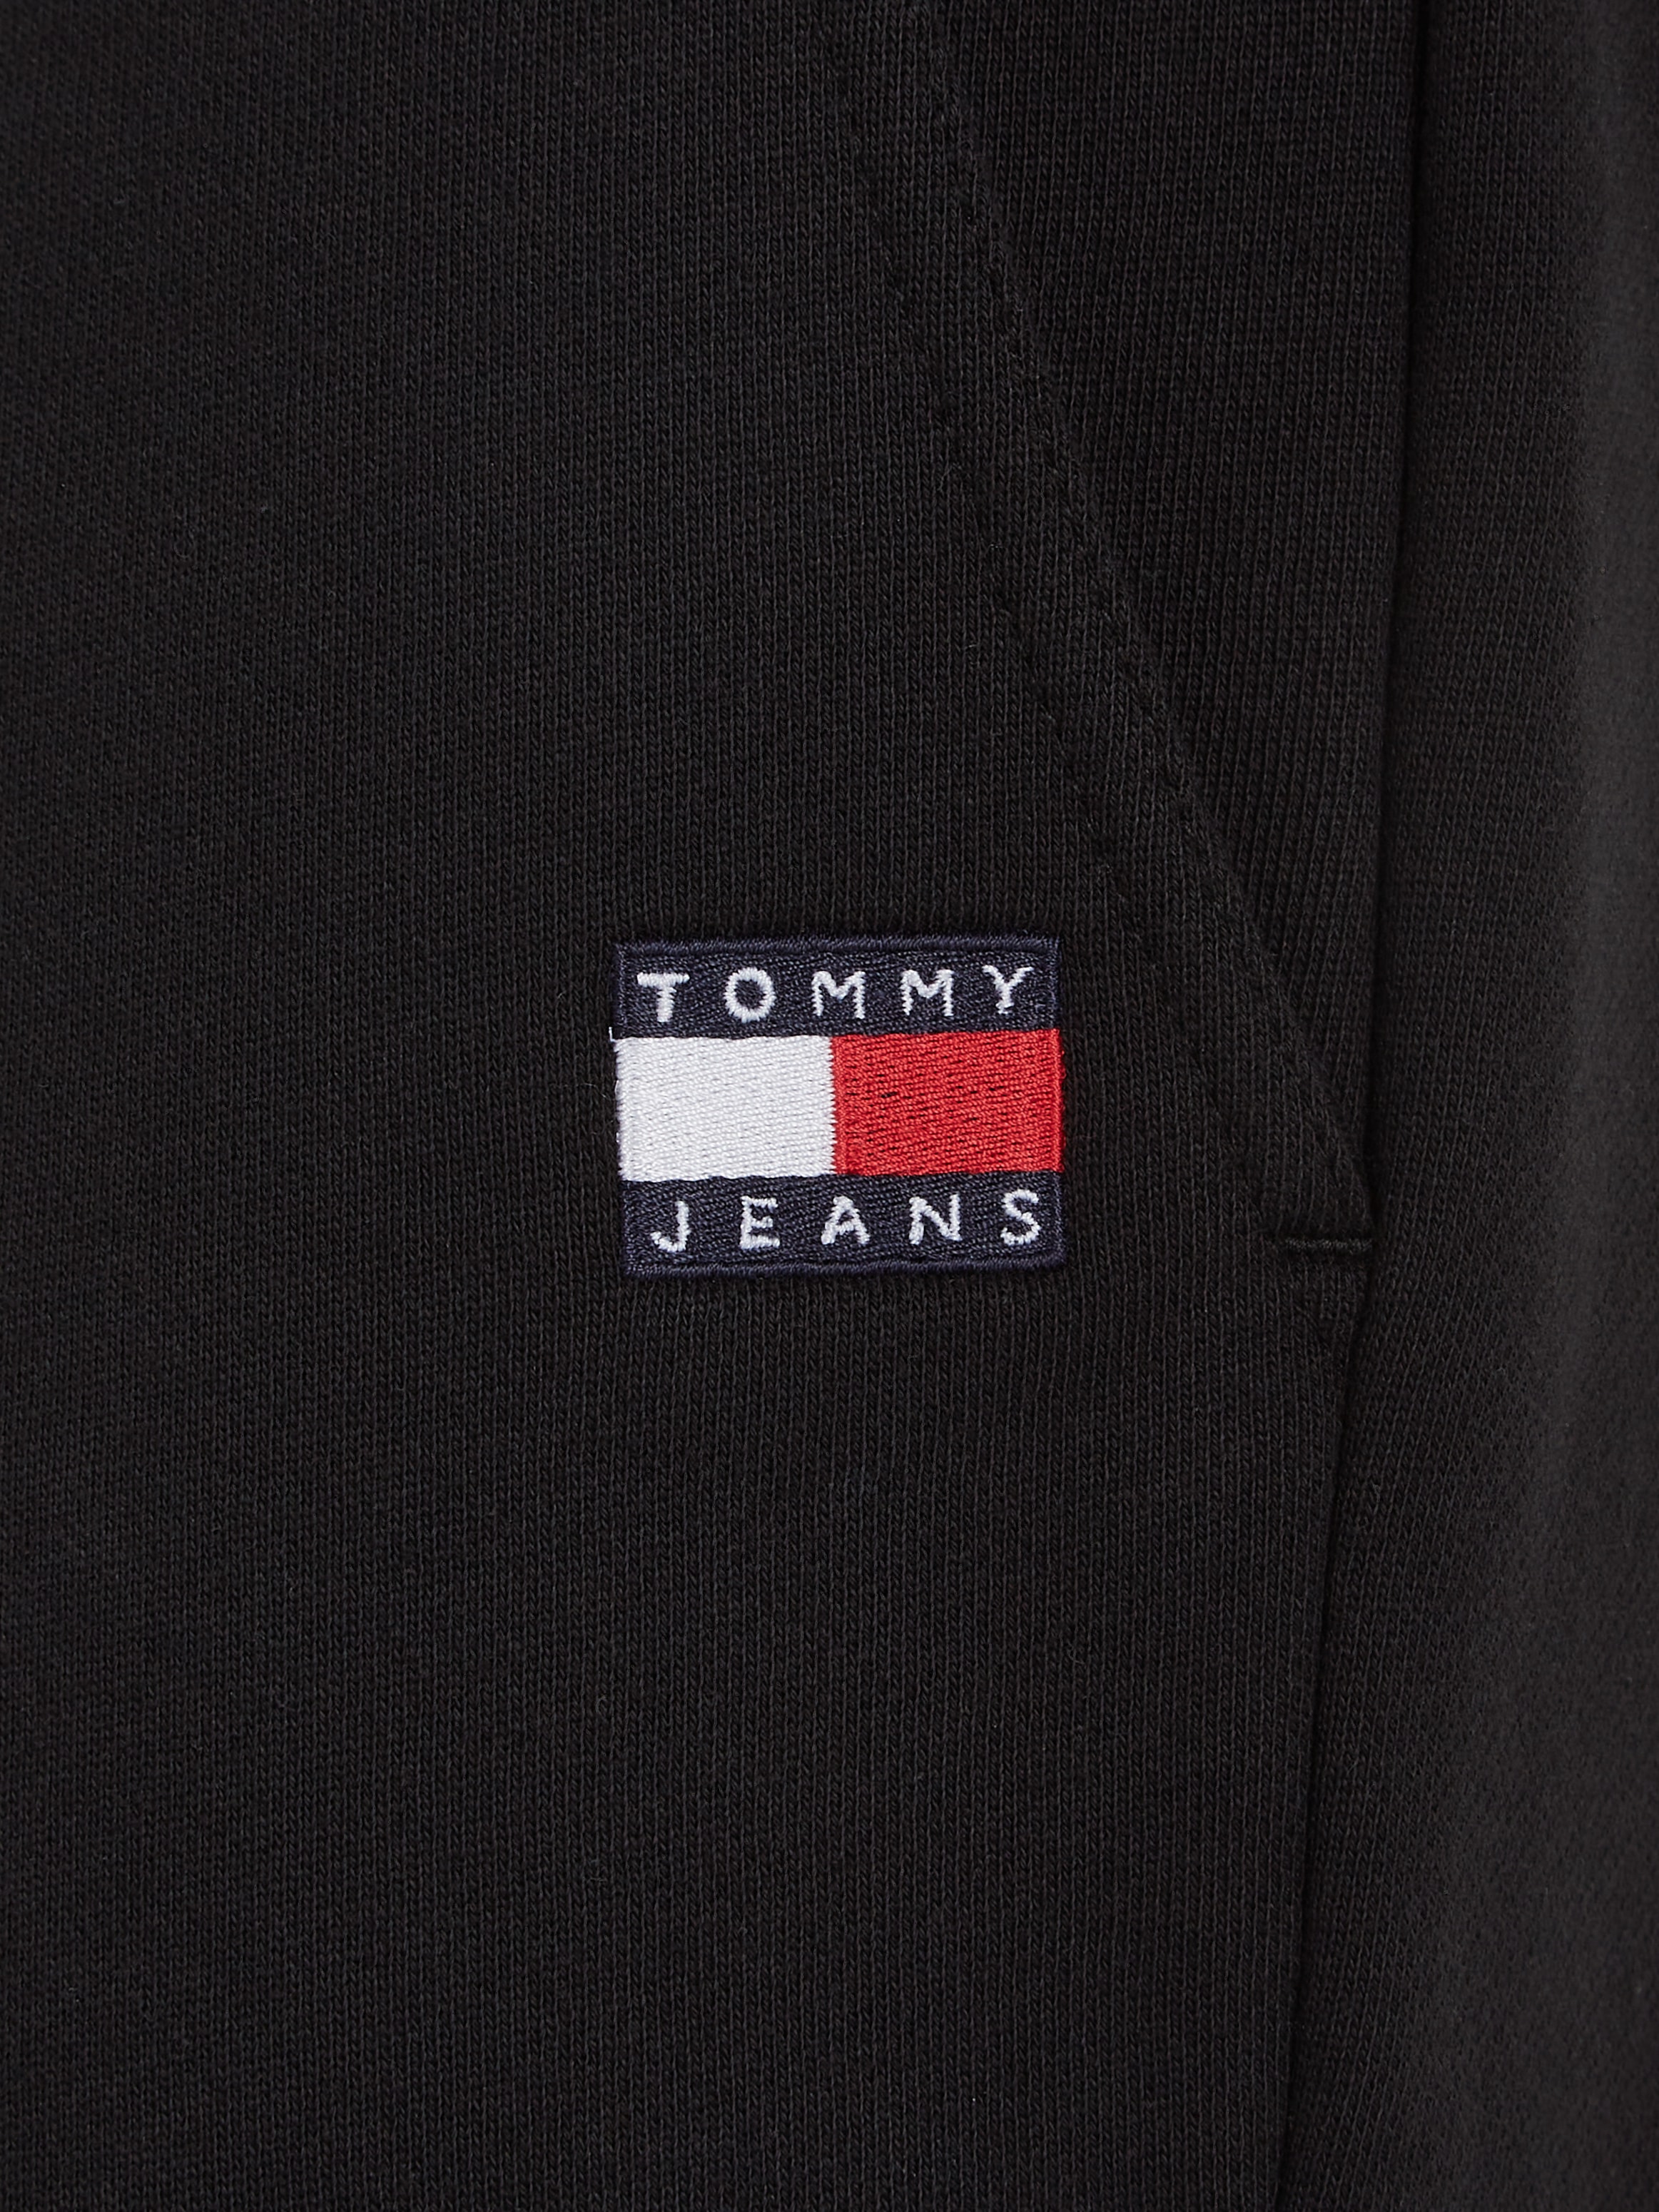 Tommy Jeans Jogginghose »TJM REG BADGE JOGGER«, mit Logobadge